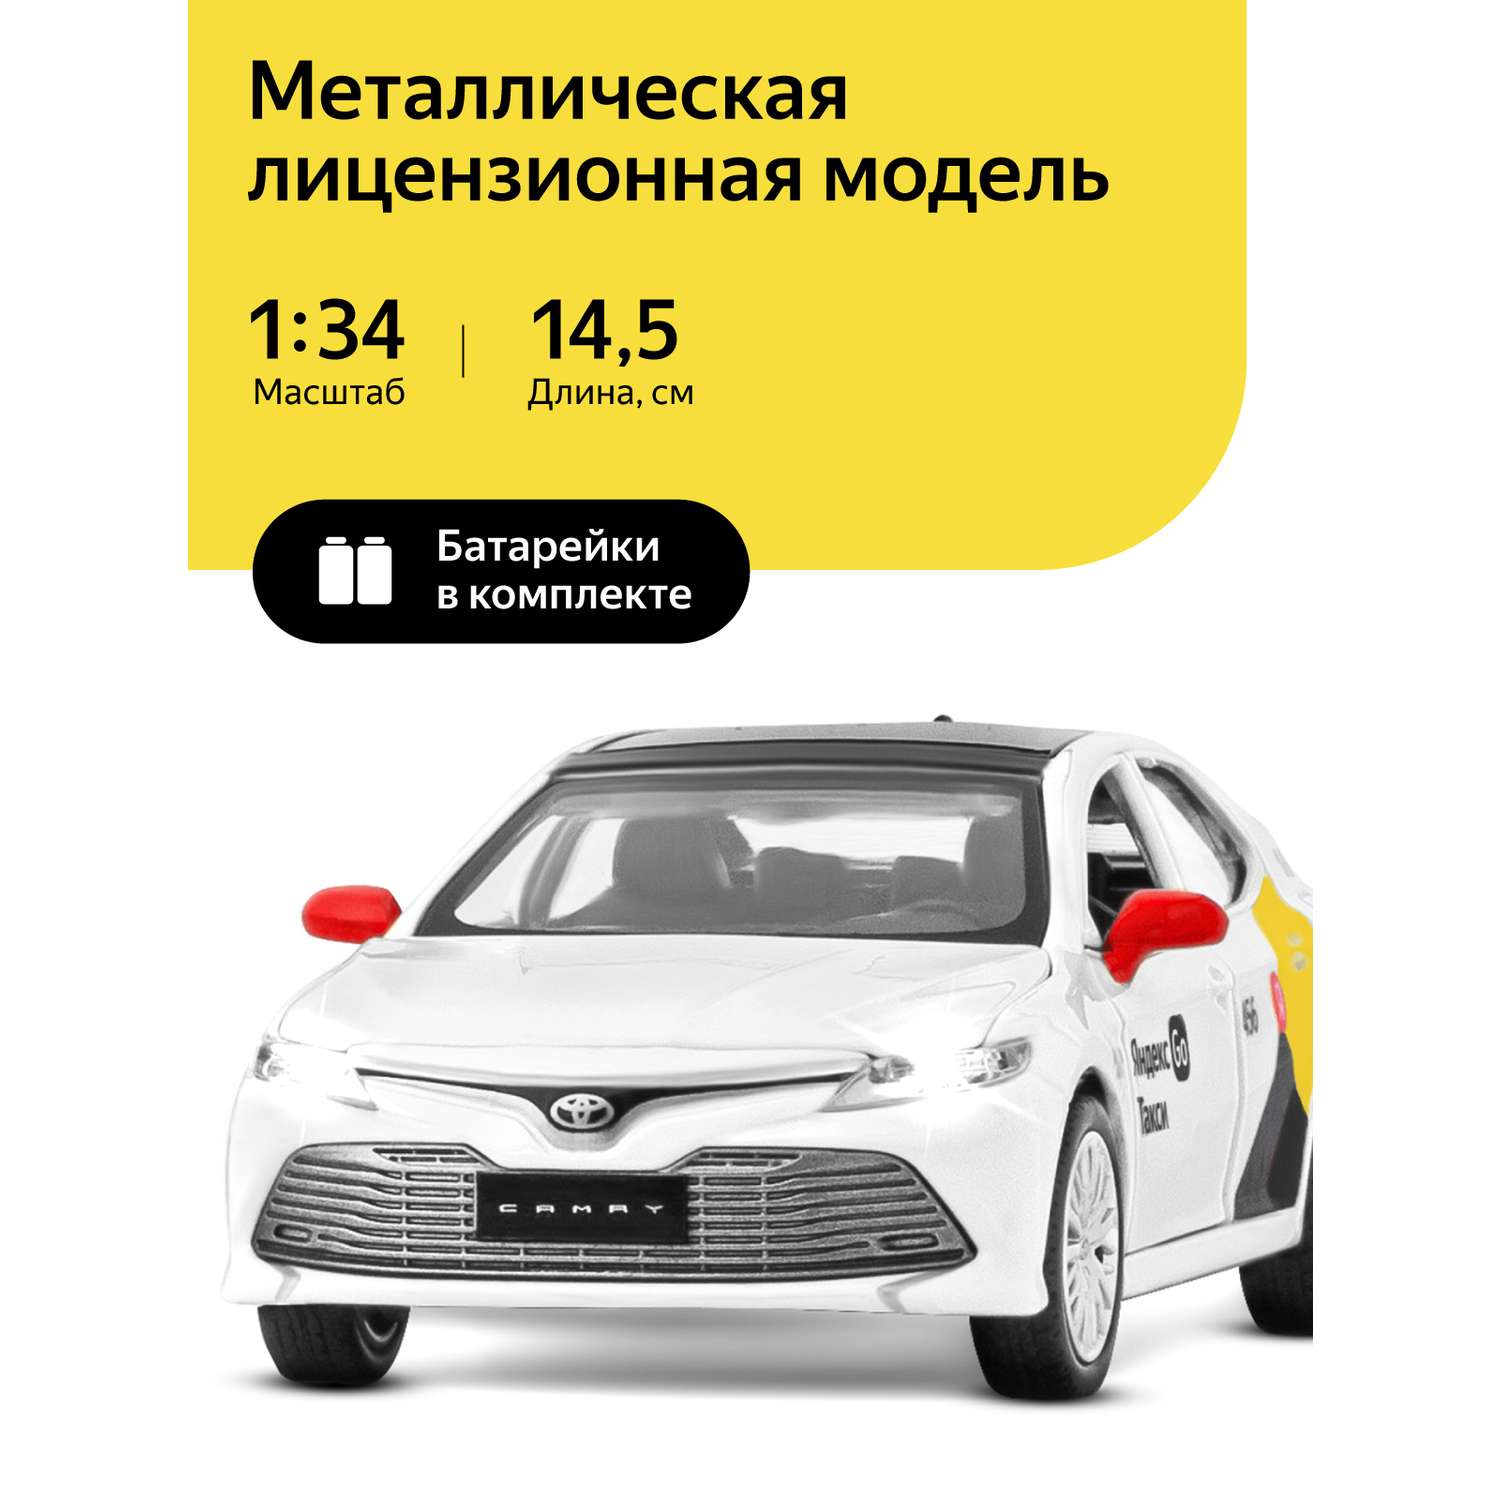 Машинка металлическая Яндекс GO 1:34 Toyota Camry белый инерция JB1251483 - фото 1